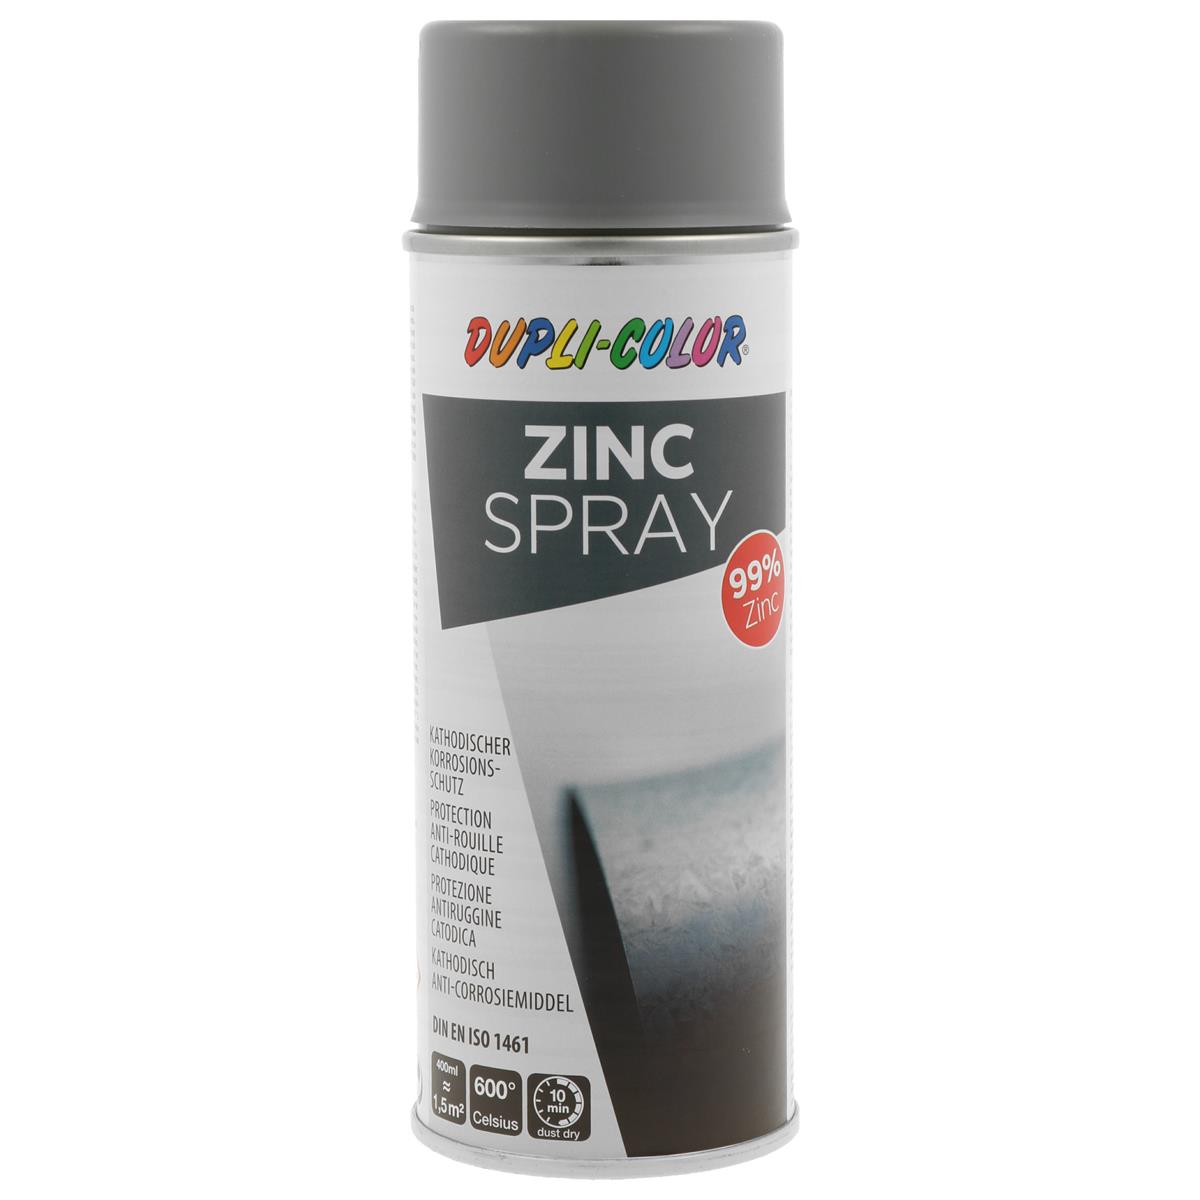 DUPLI-COLOR Zink Spray - 400ml